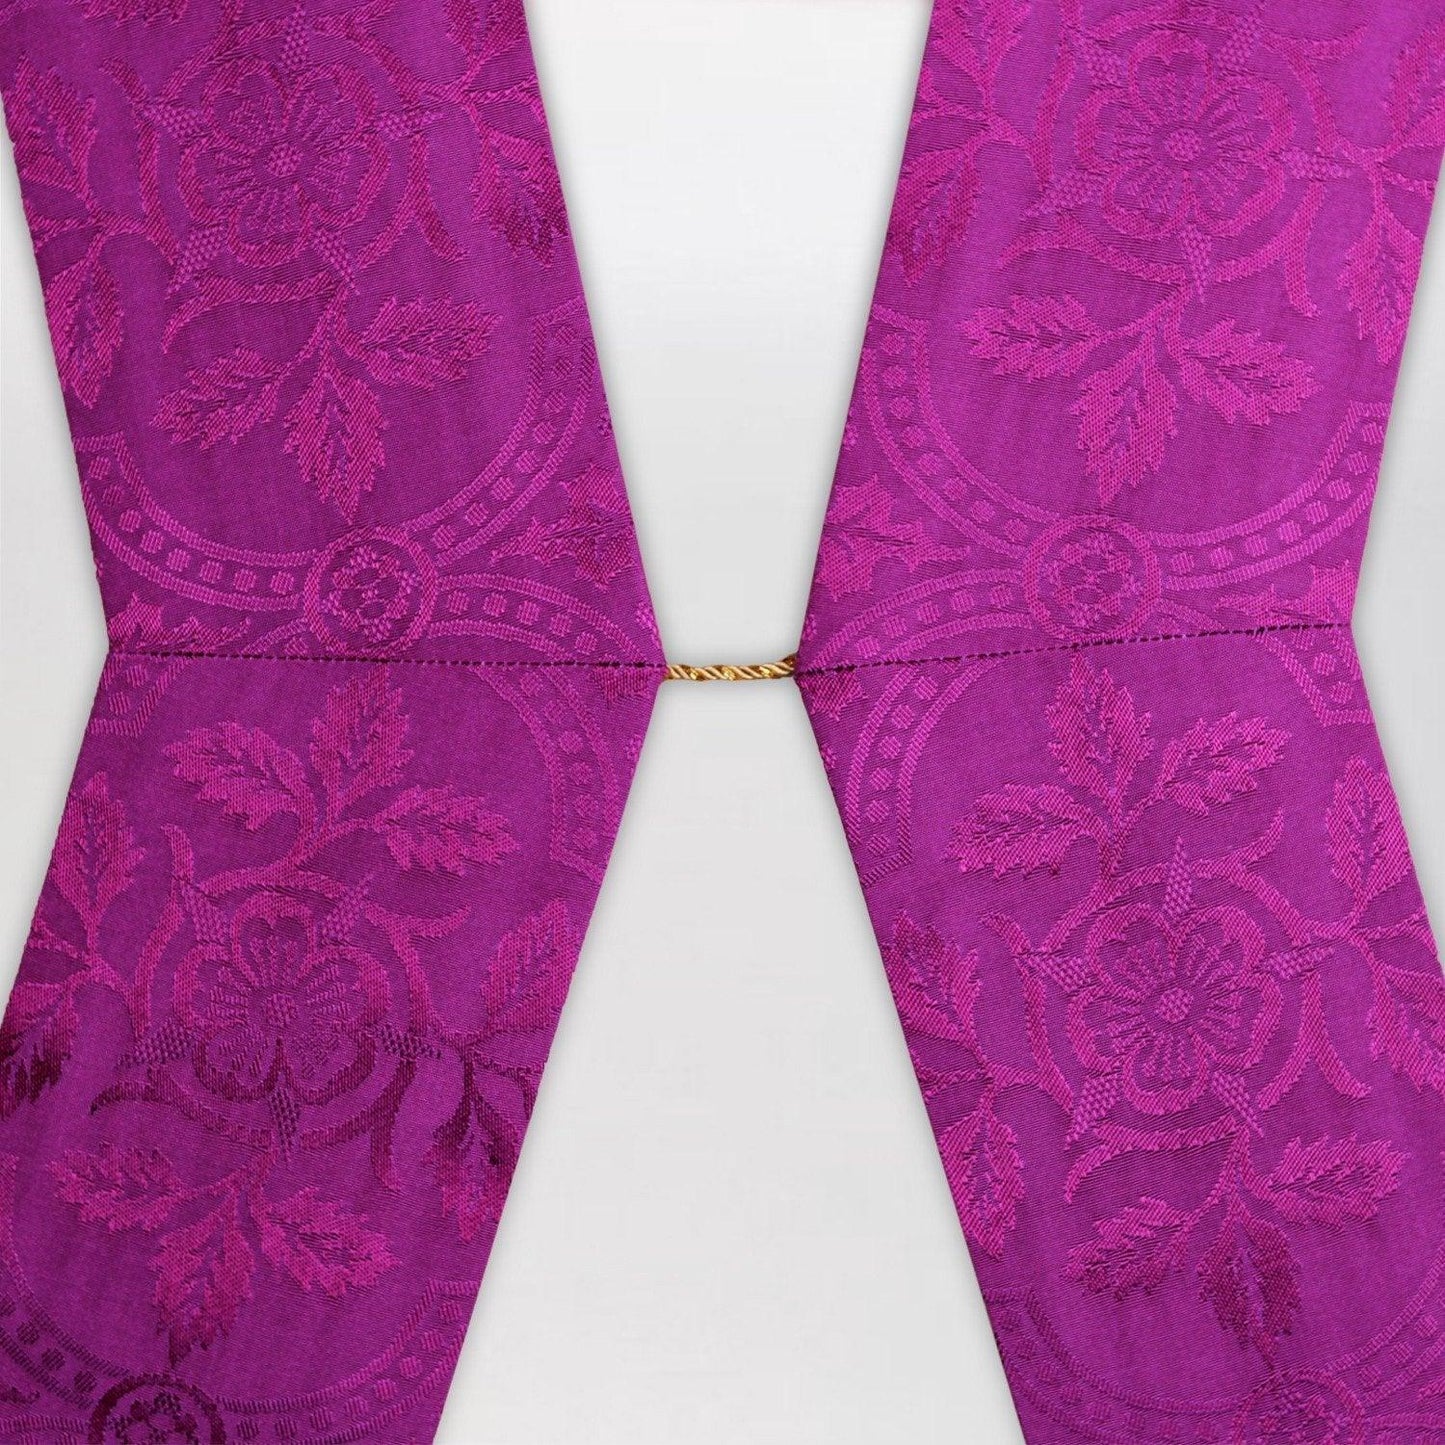 Angled Deacon Stole in Roman Purple - Watts & Co. (international)